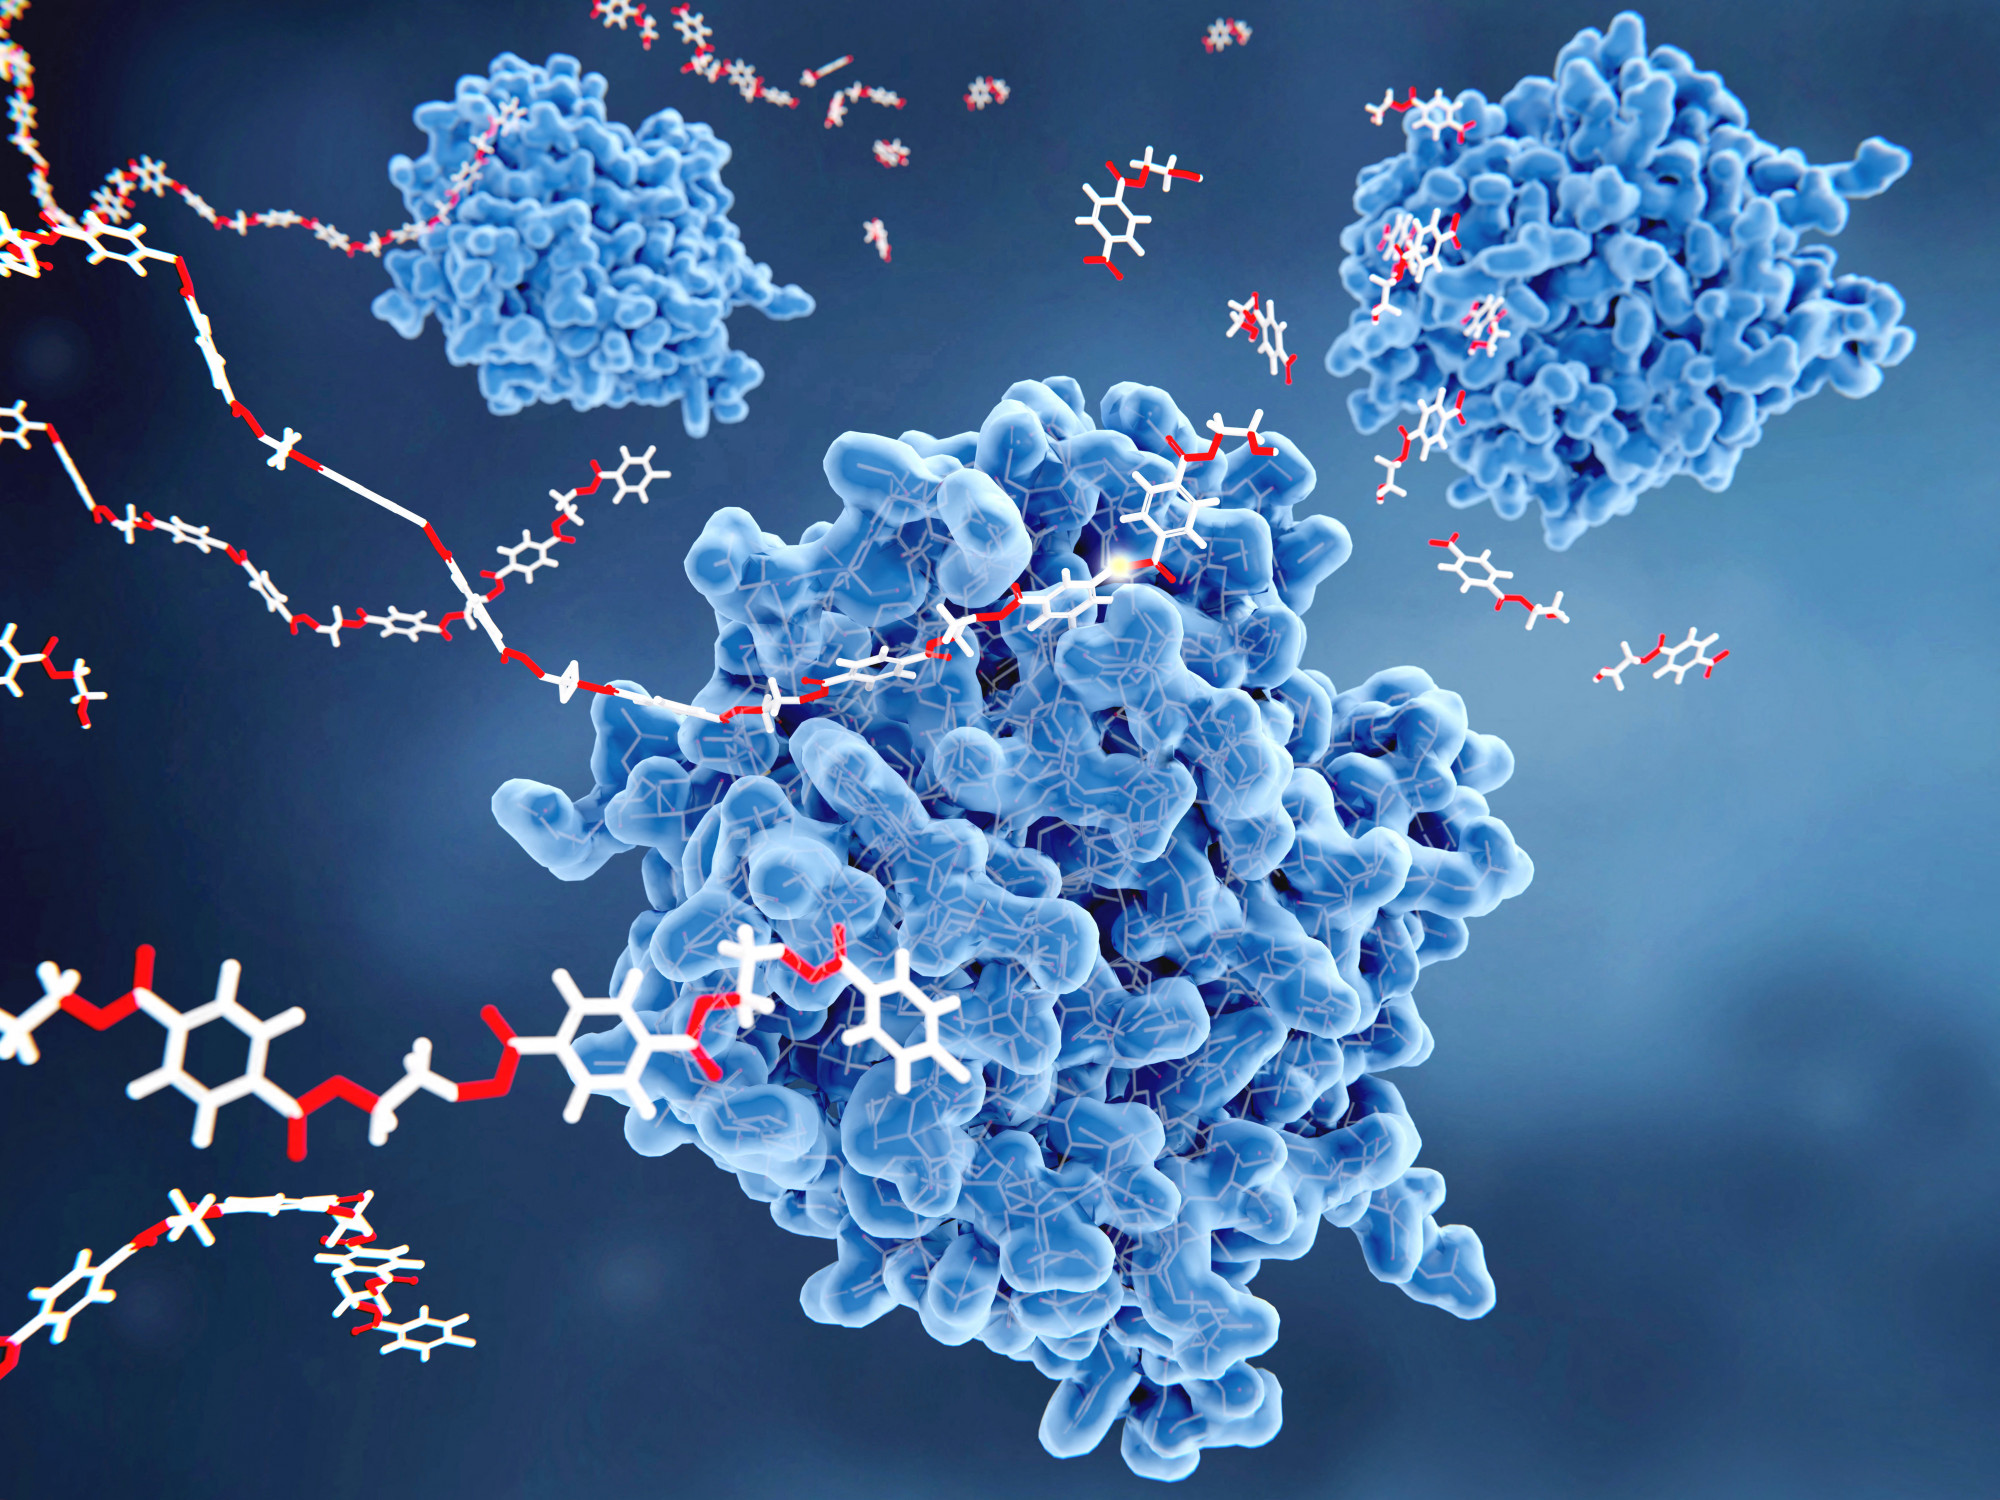 PETáz enzimek (kékkel) monomer molekulákká (jobbra fent) alakítják a polietilén tereftalát (PET)-műanyagokat (pirossal és fehérrel jelölve, a kép bal oldalán). A lebontási folyamat tereftálsavat és etilénglikolt eredményez, ezek a környezetre nézve ártalmatlan anyagok.